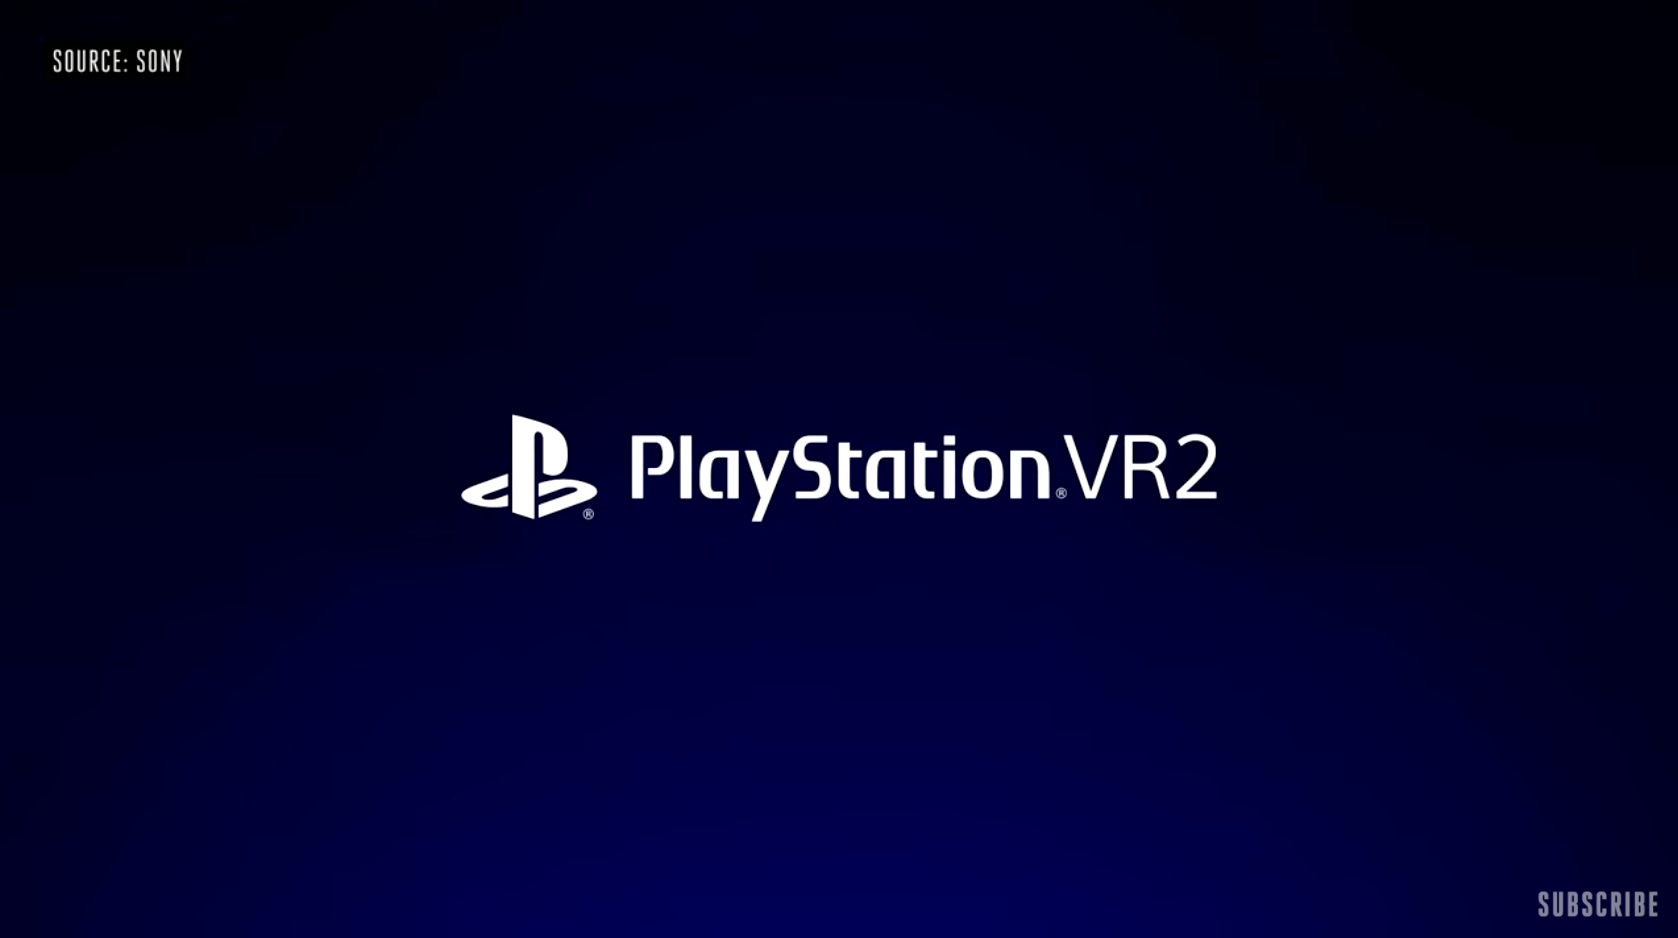 Sony『 PlayStation VR2 』來了，首款遊戲為《地平線》新作！主打 4K HDR、全新感官功能強化玩家體驗